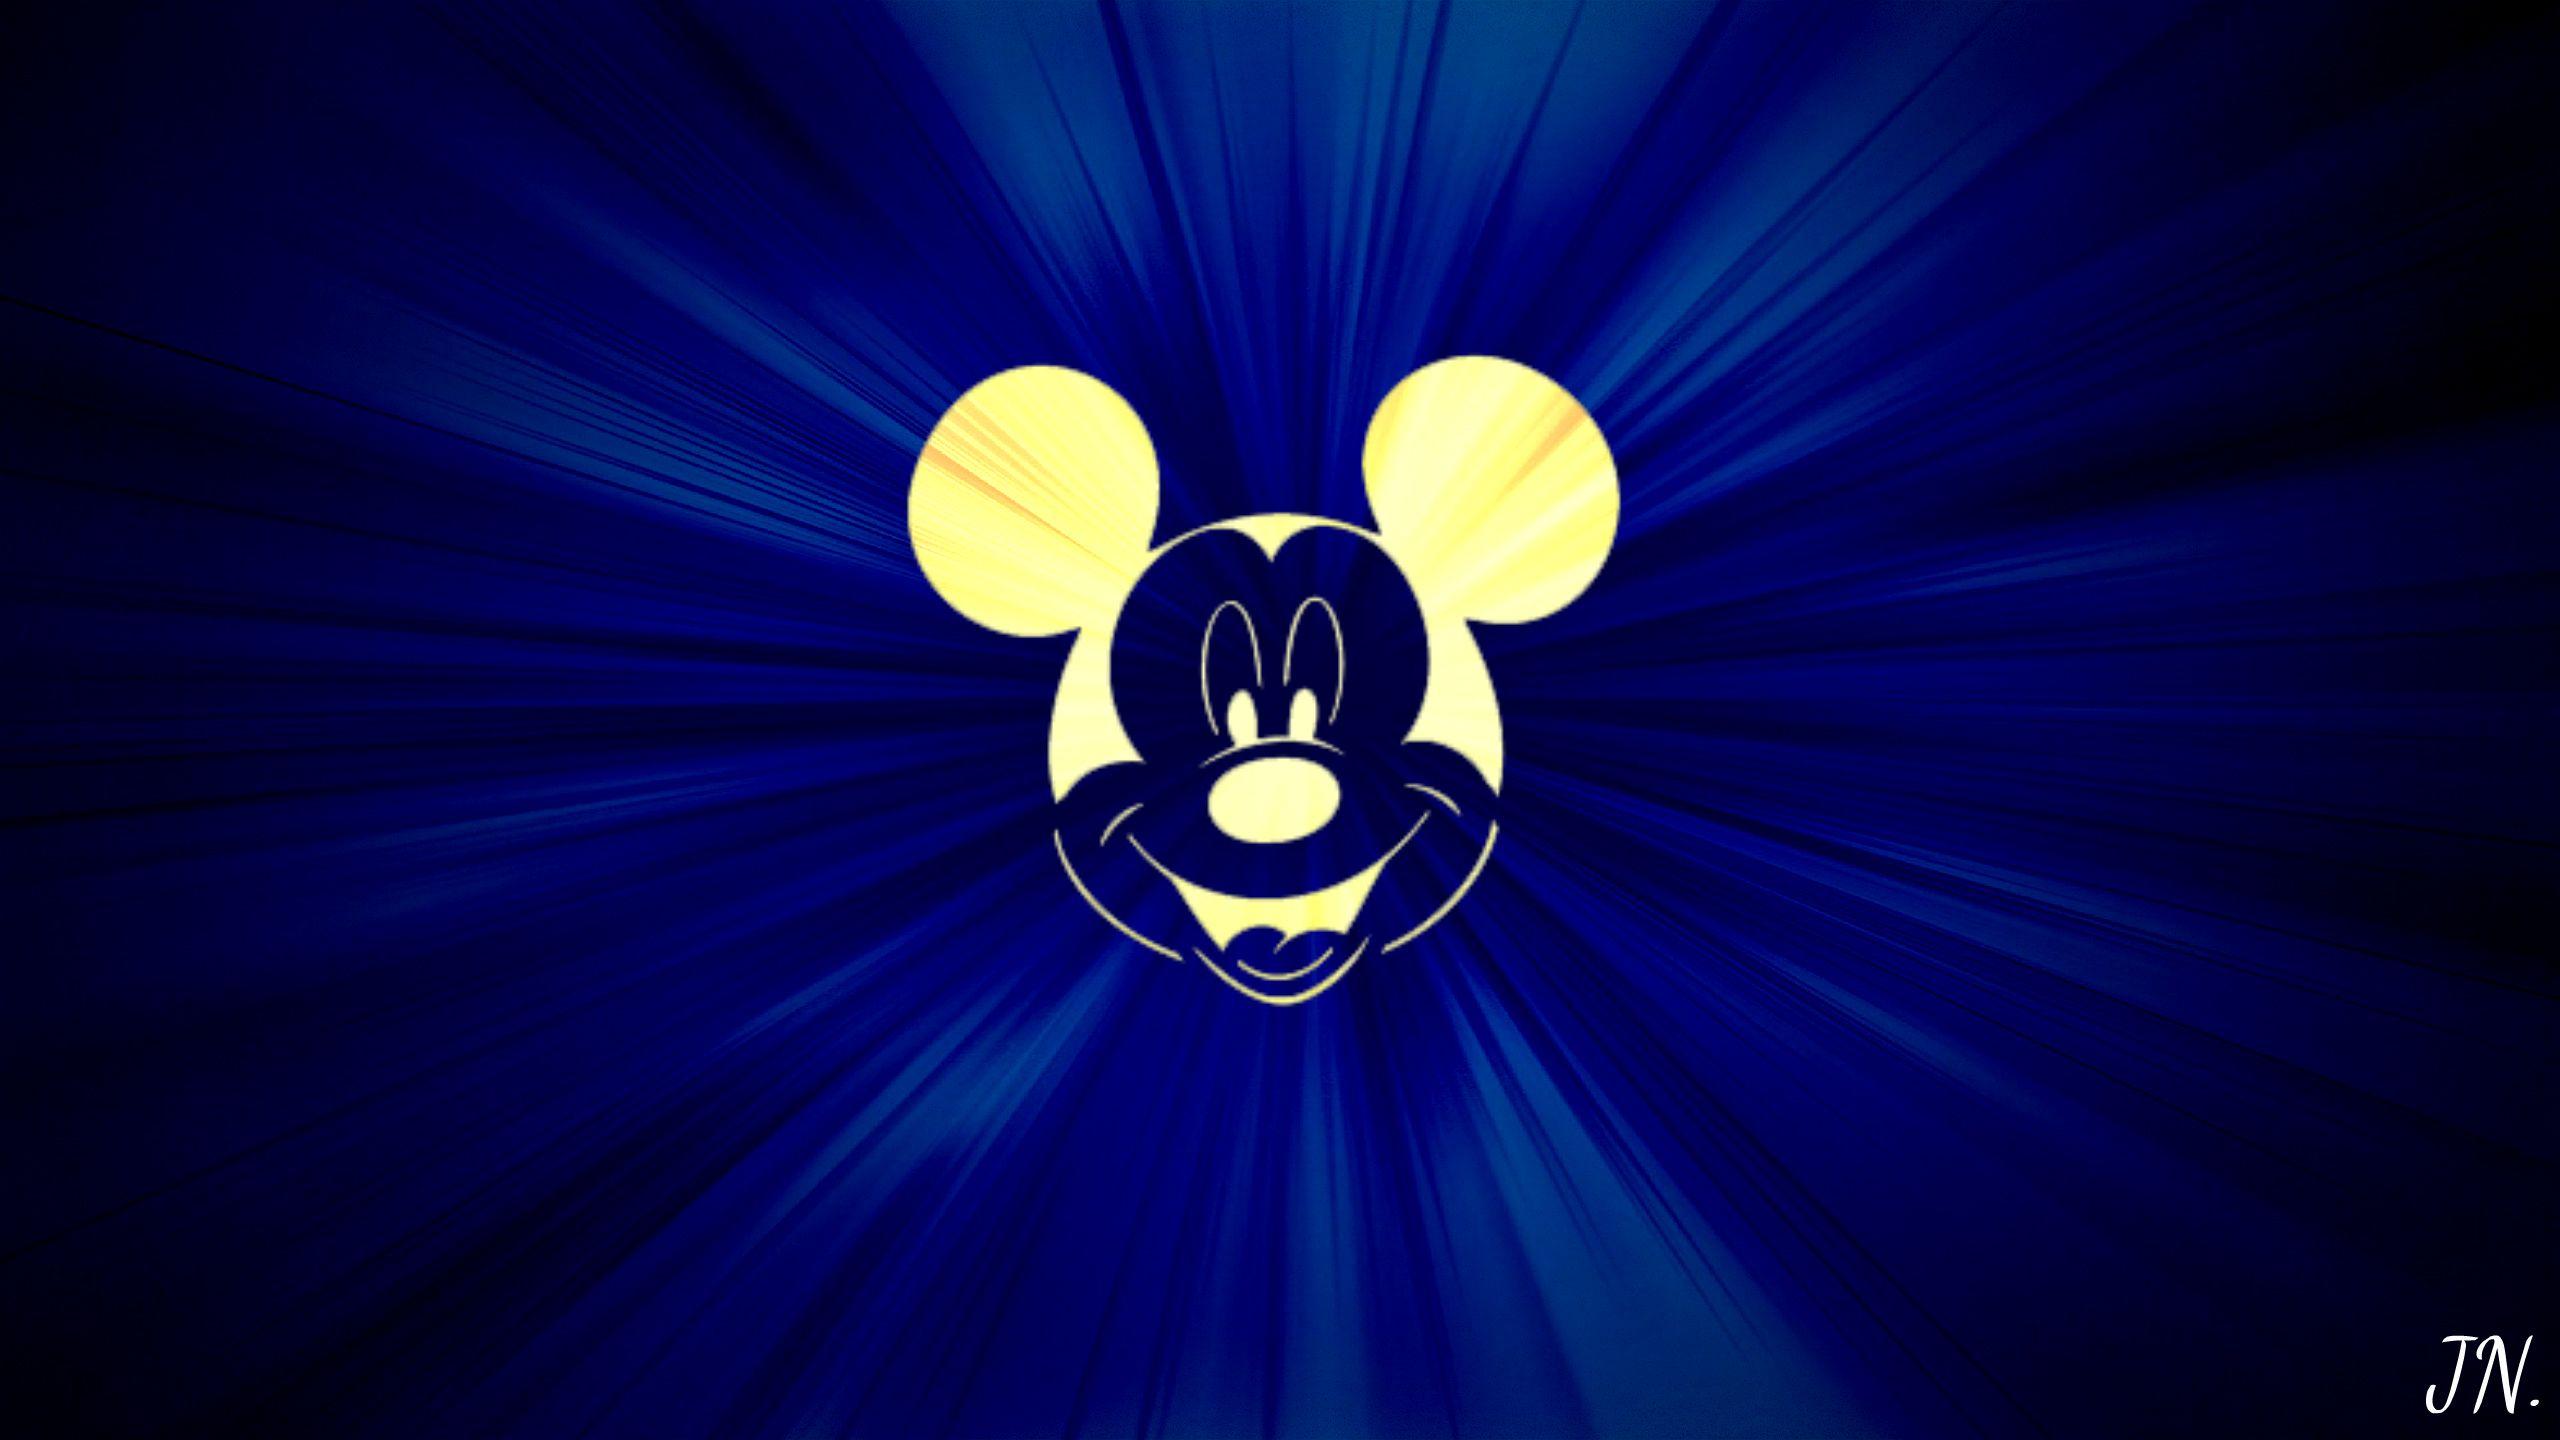 2560x1440 Mitomania dc: Hình nền chuột Mickey